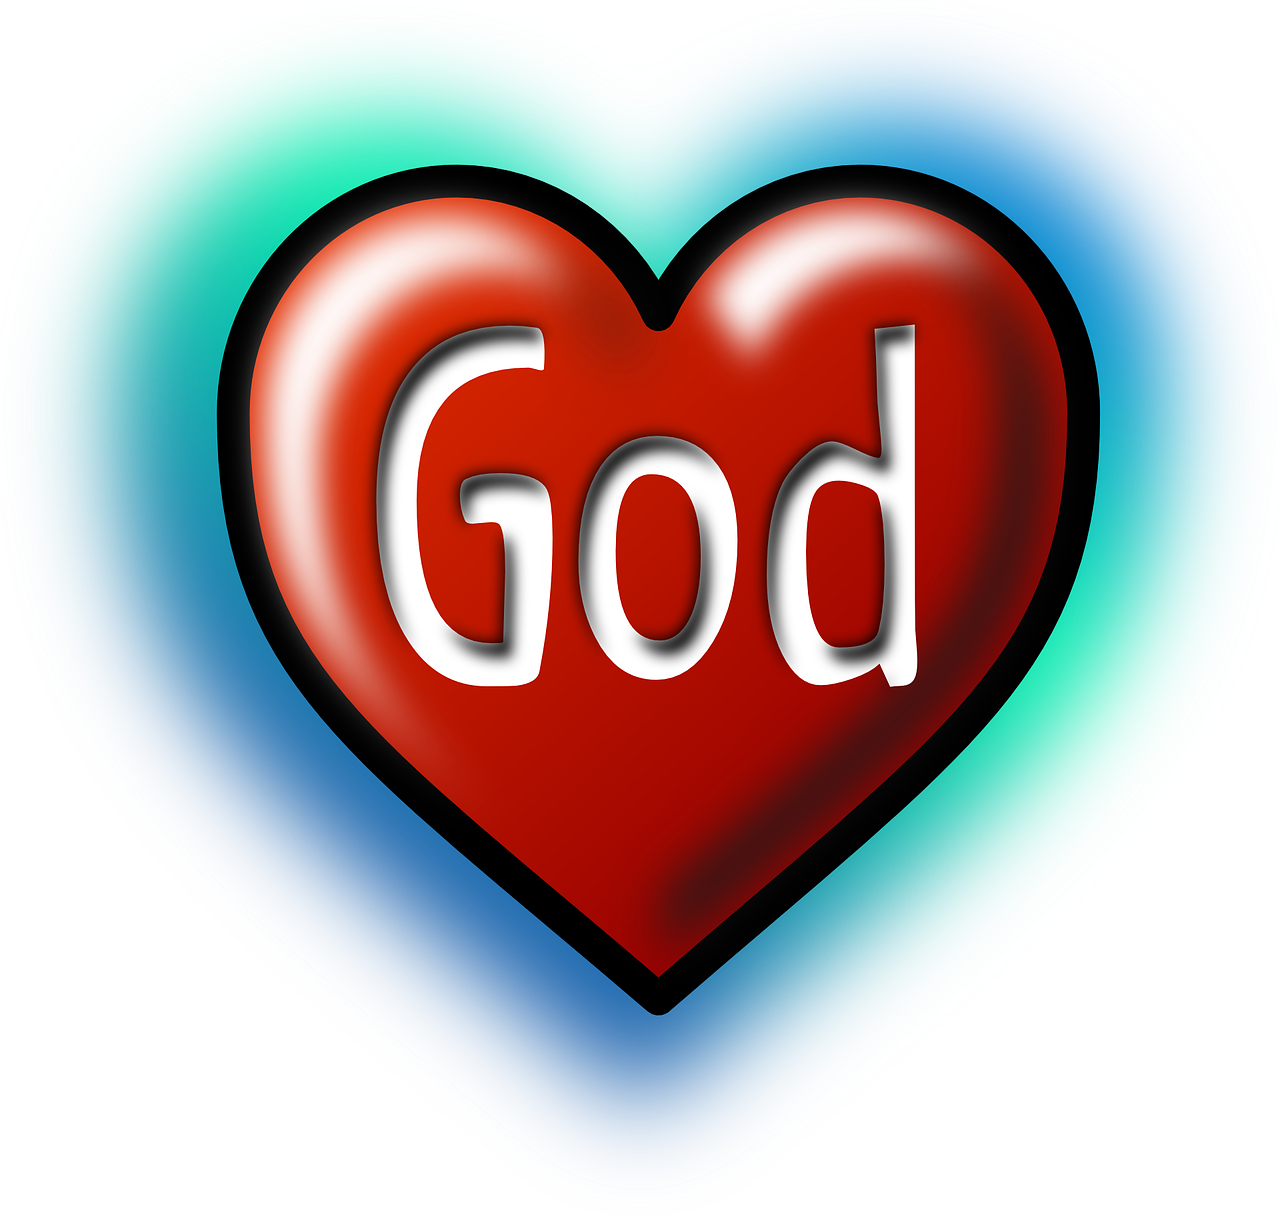 god, heart, love